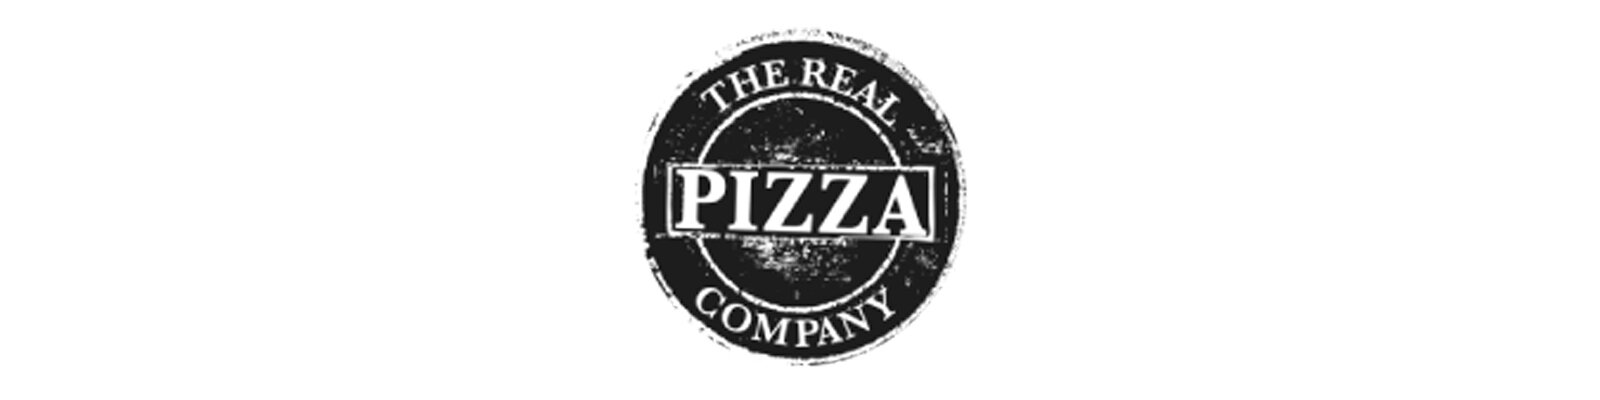 The Real Pizza Company Logo.jpg